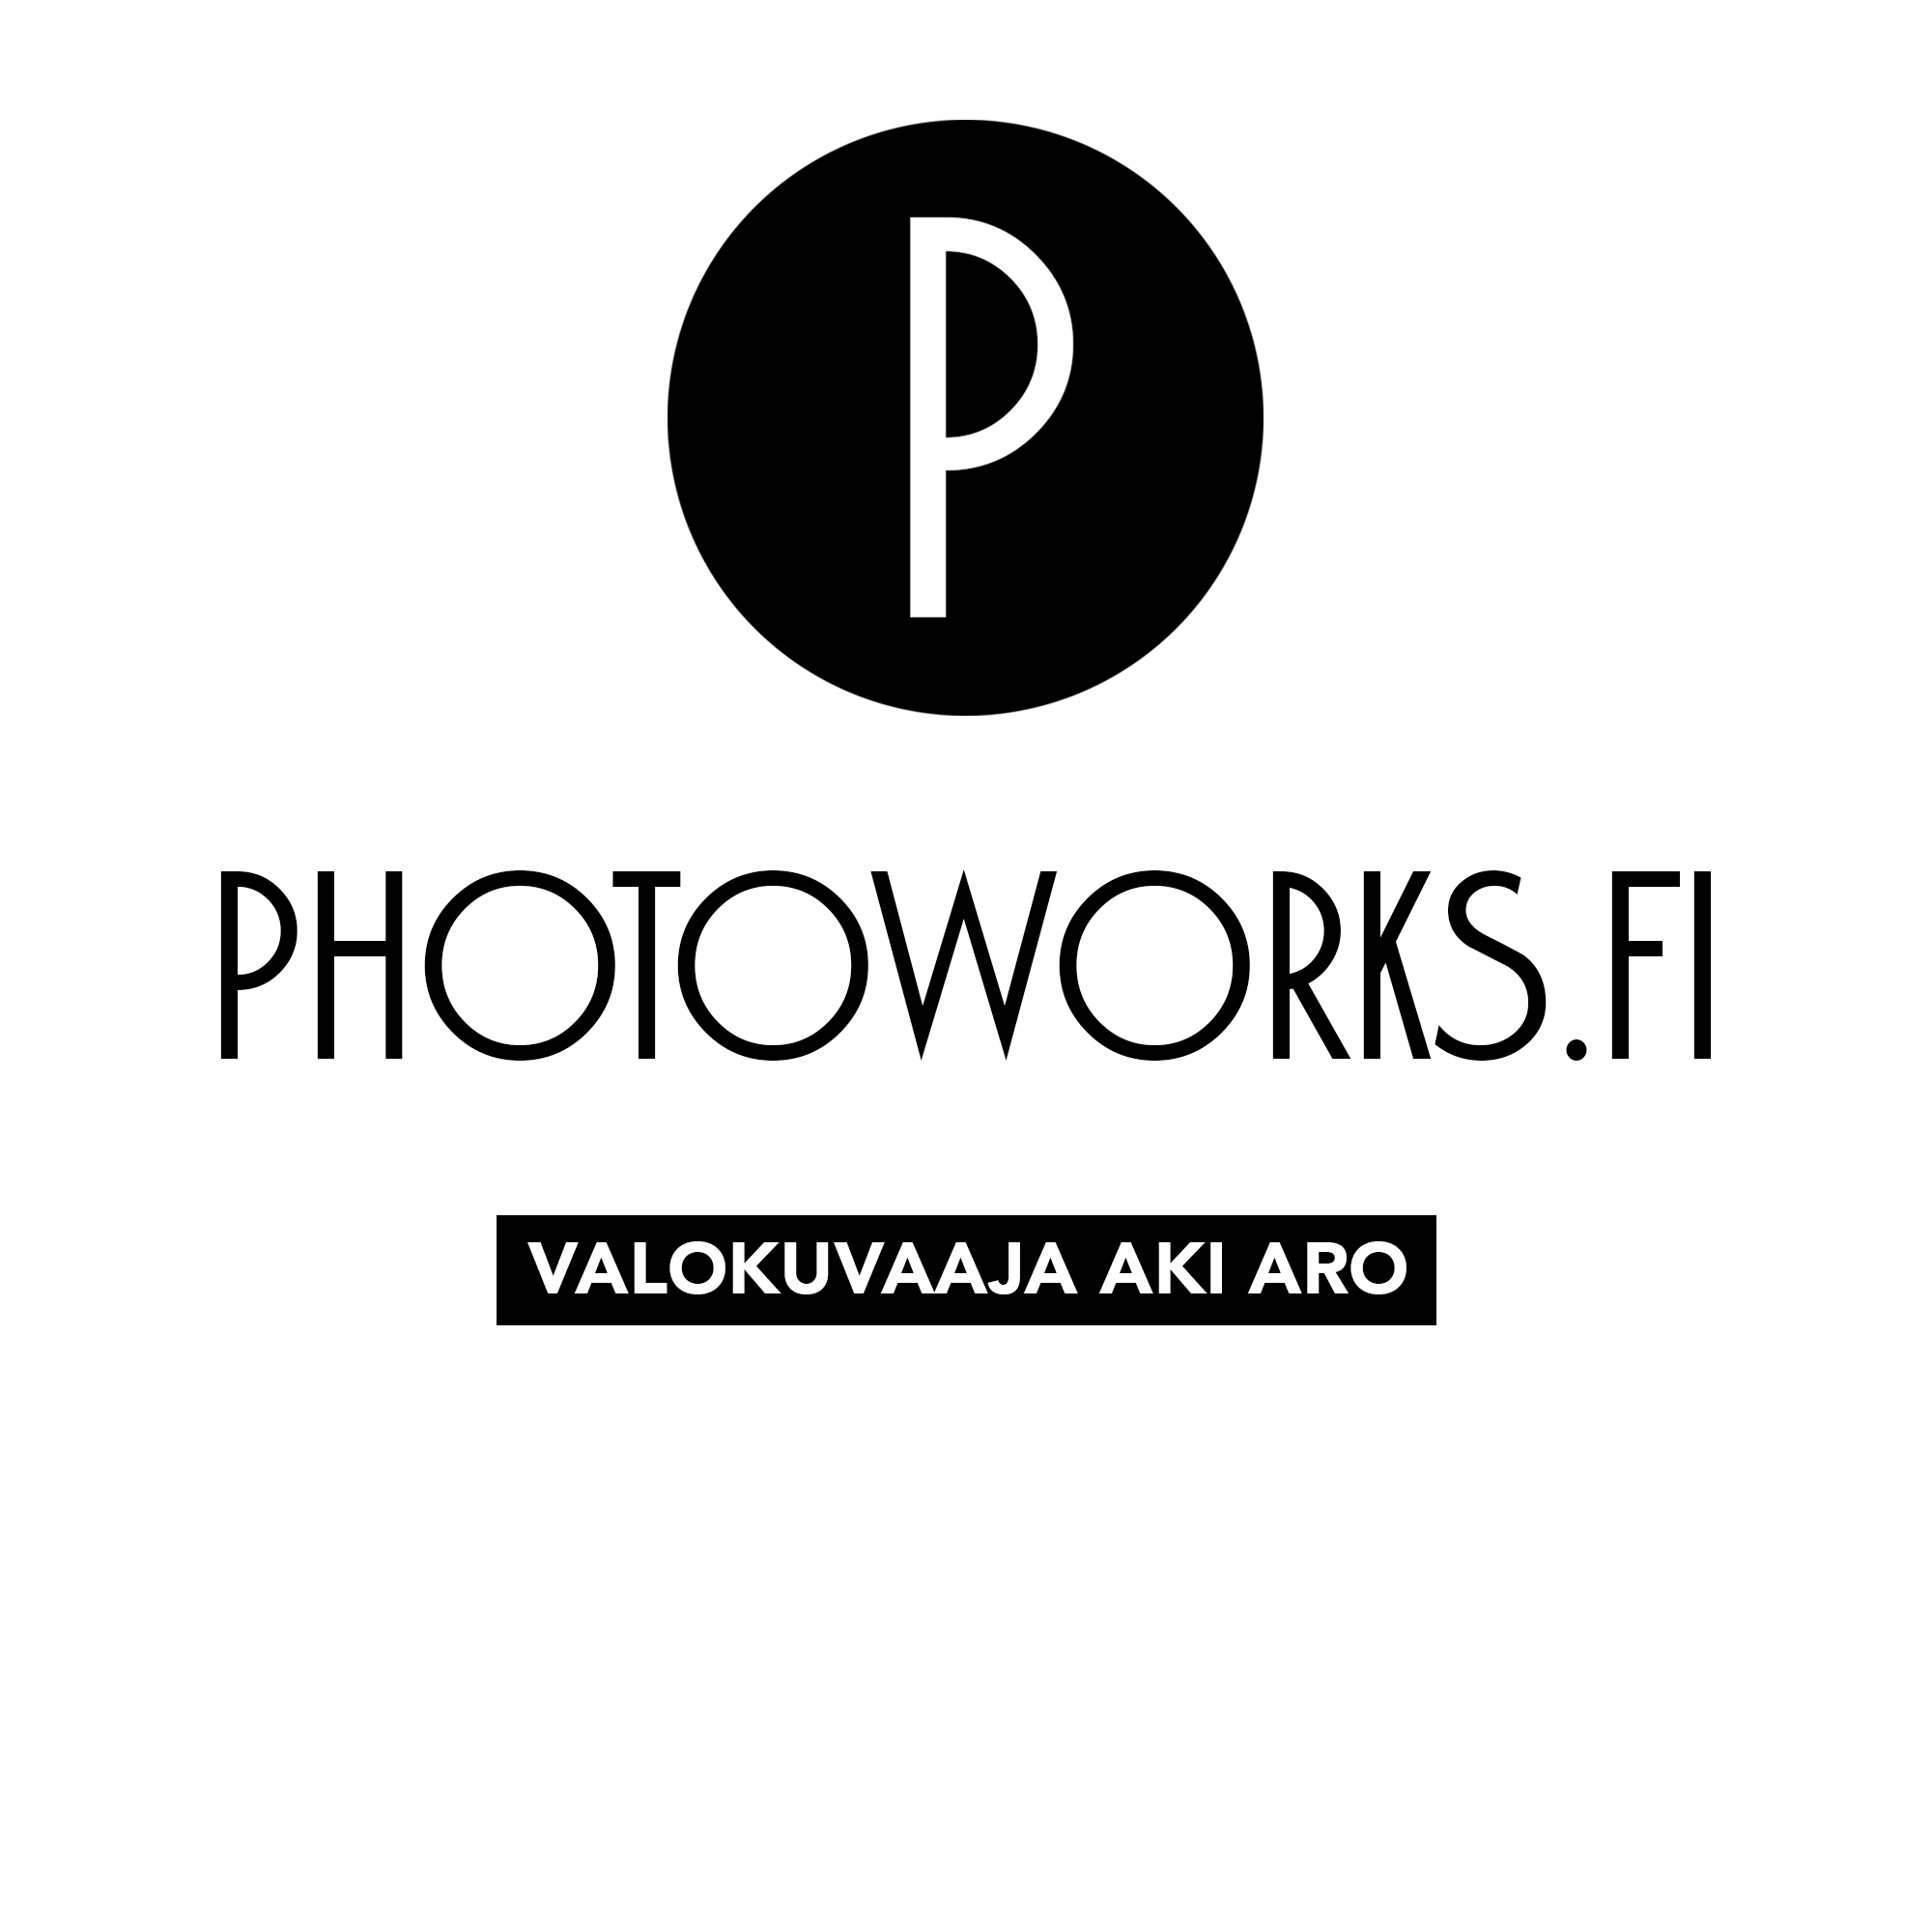 Photoworks.fi